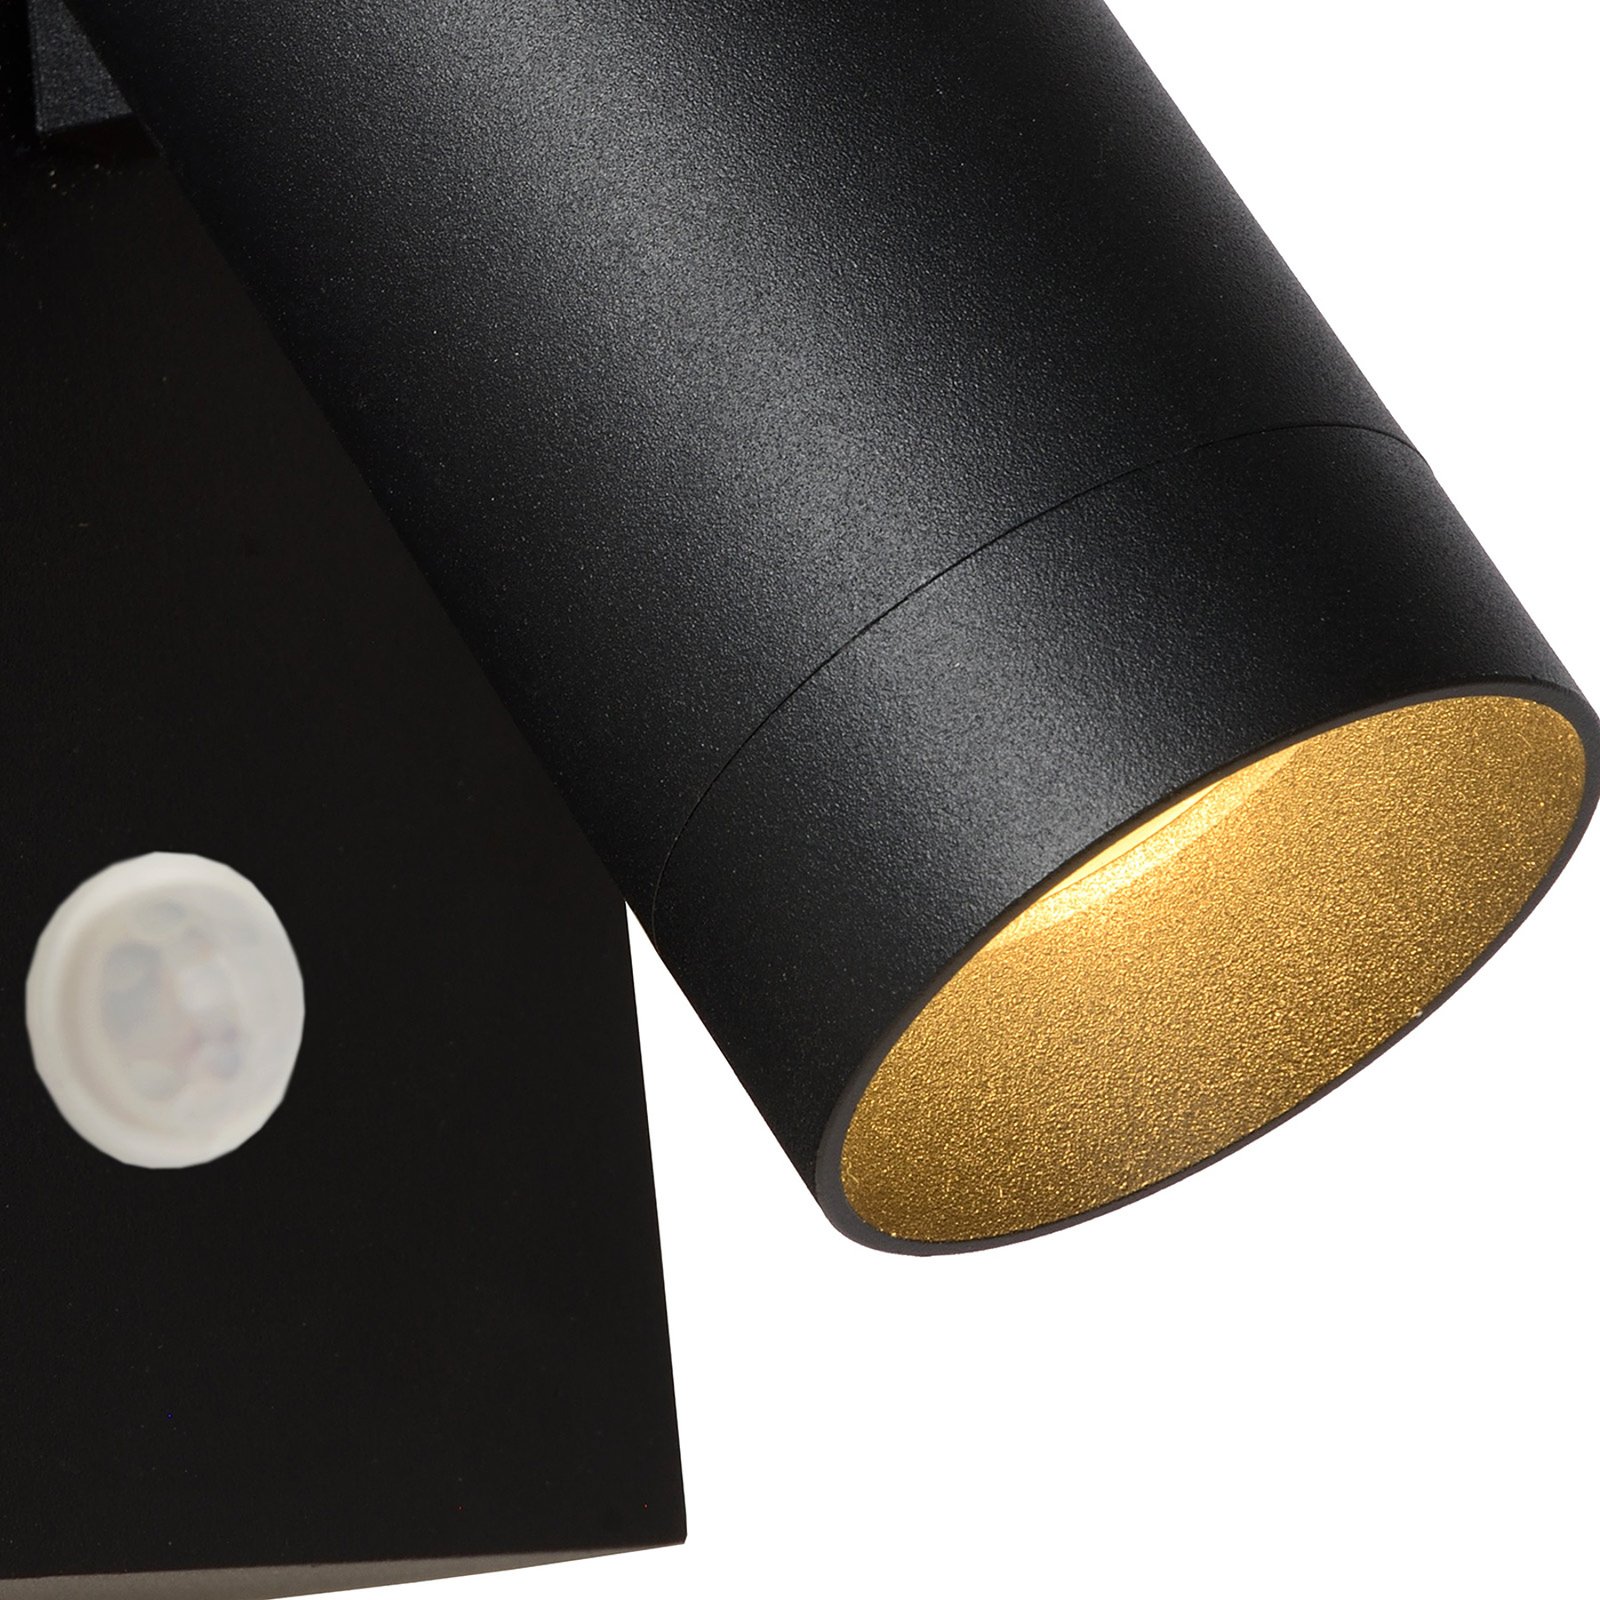 Outdoor wall spotlight Taylor Sensor, 1-bulb black